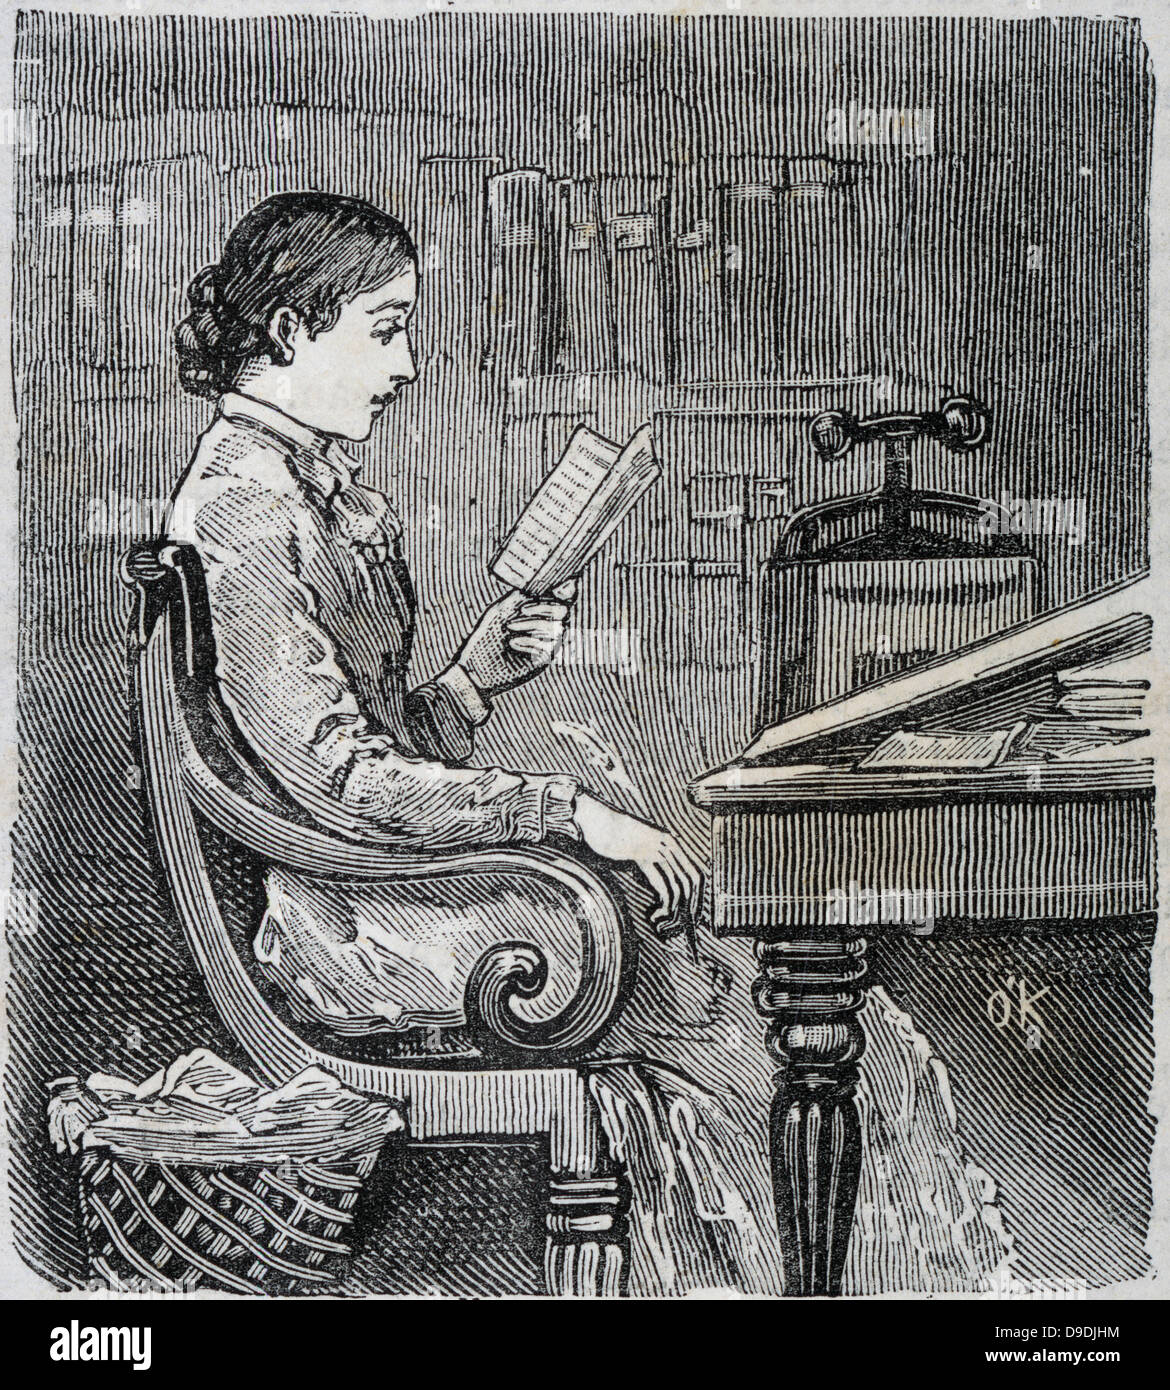 Lady-Editor auf Korrespondenz Antworten. 1885-Gravur. Stockfoto